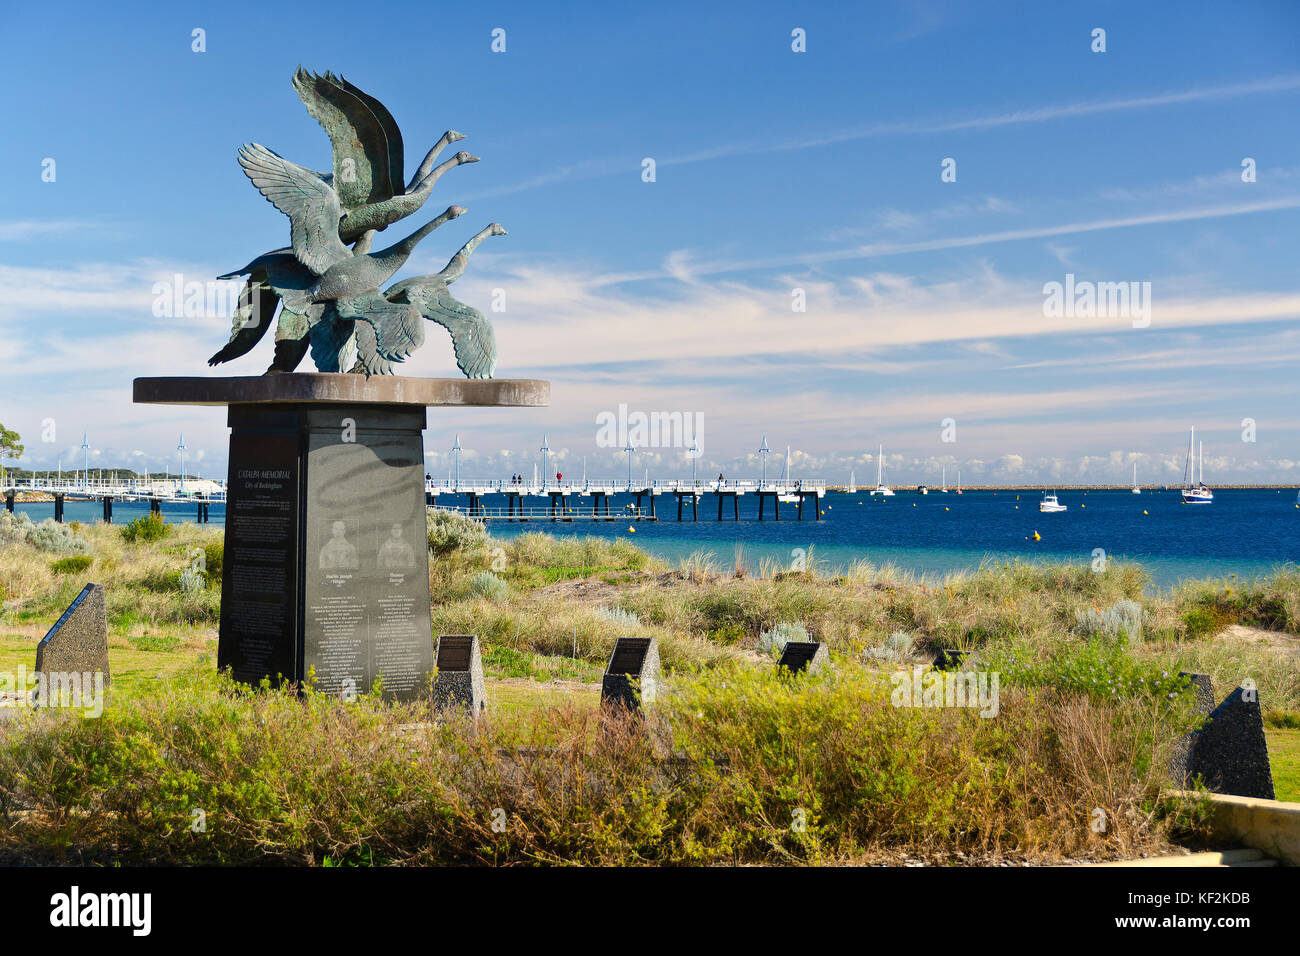 Les oies sauvages, catalpa memorial, palm beach, Australie occidentale rockingham Banque D'Images